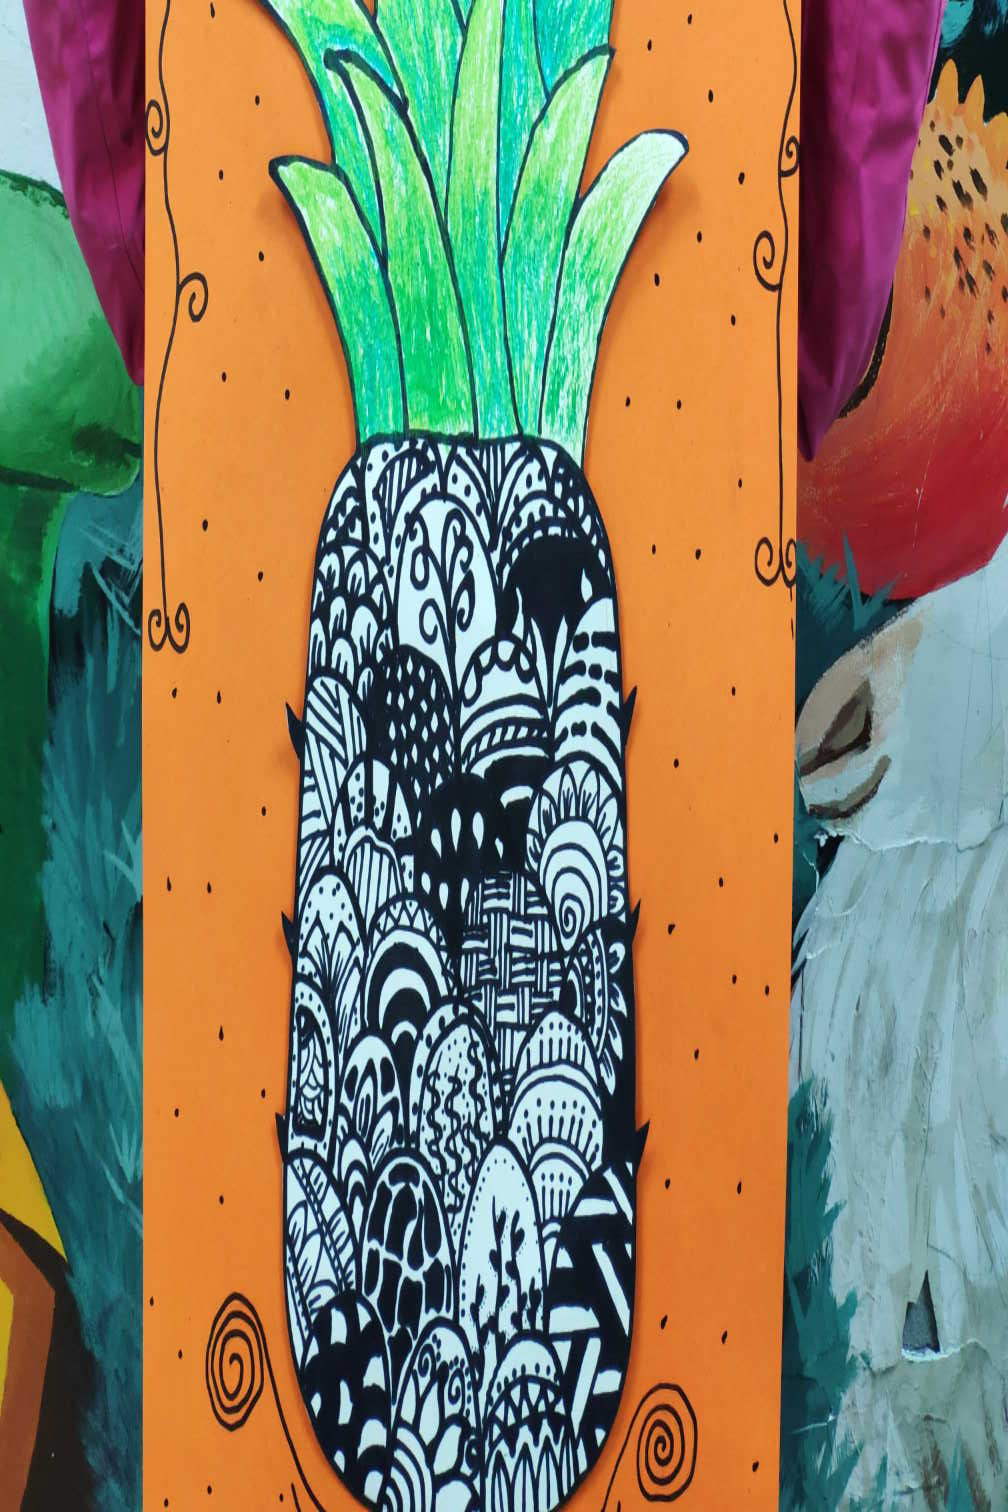 少儿美术:菠萝主题创意线描作品